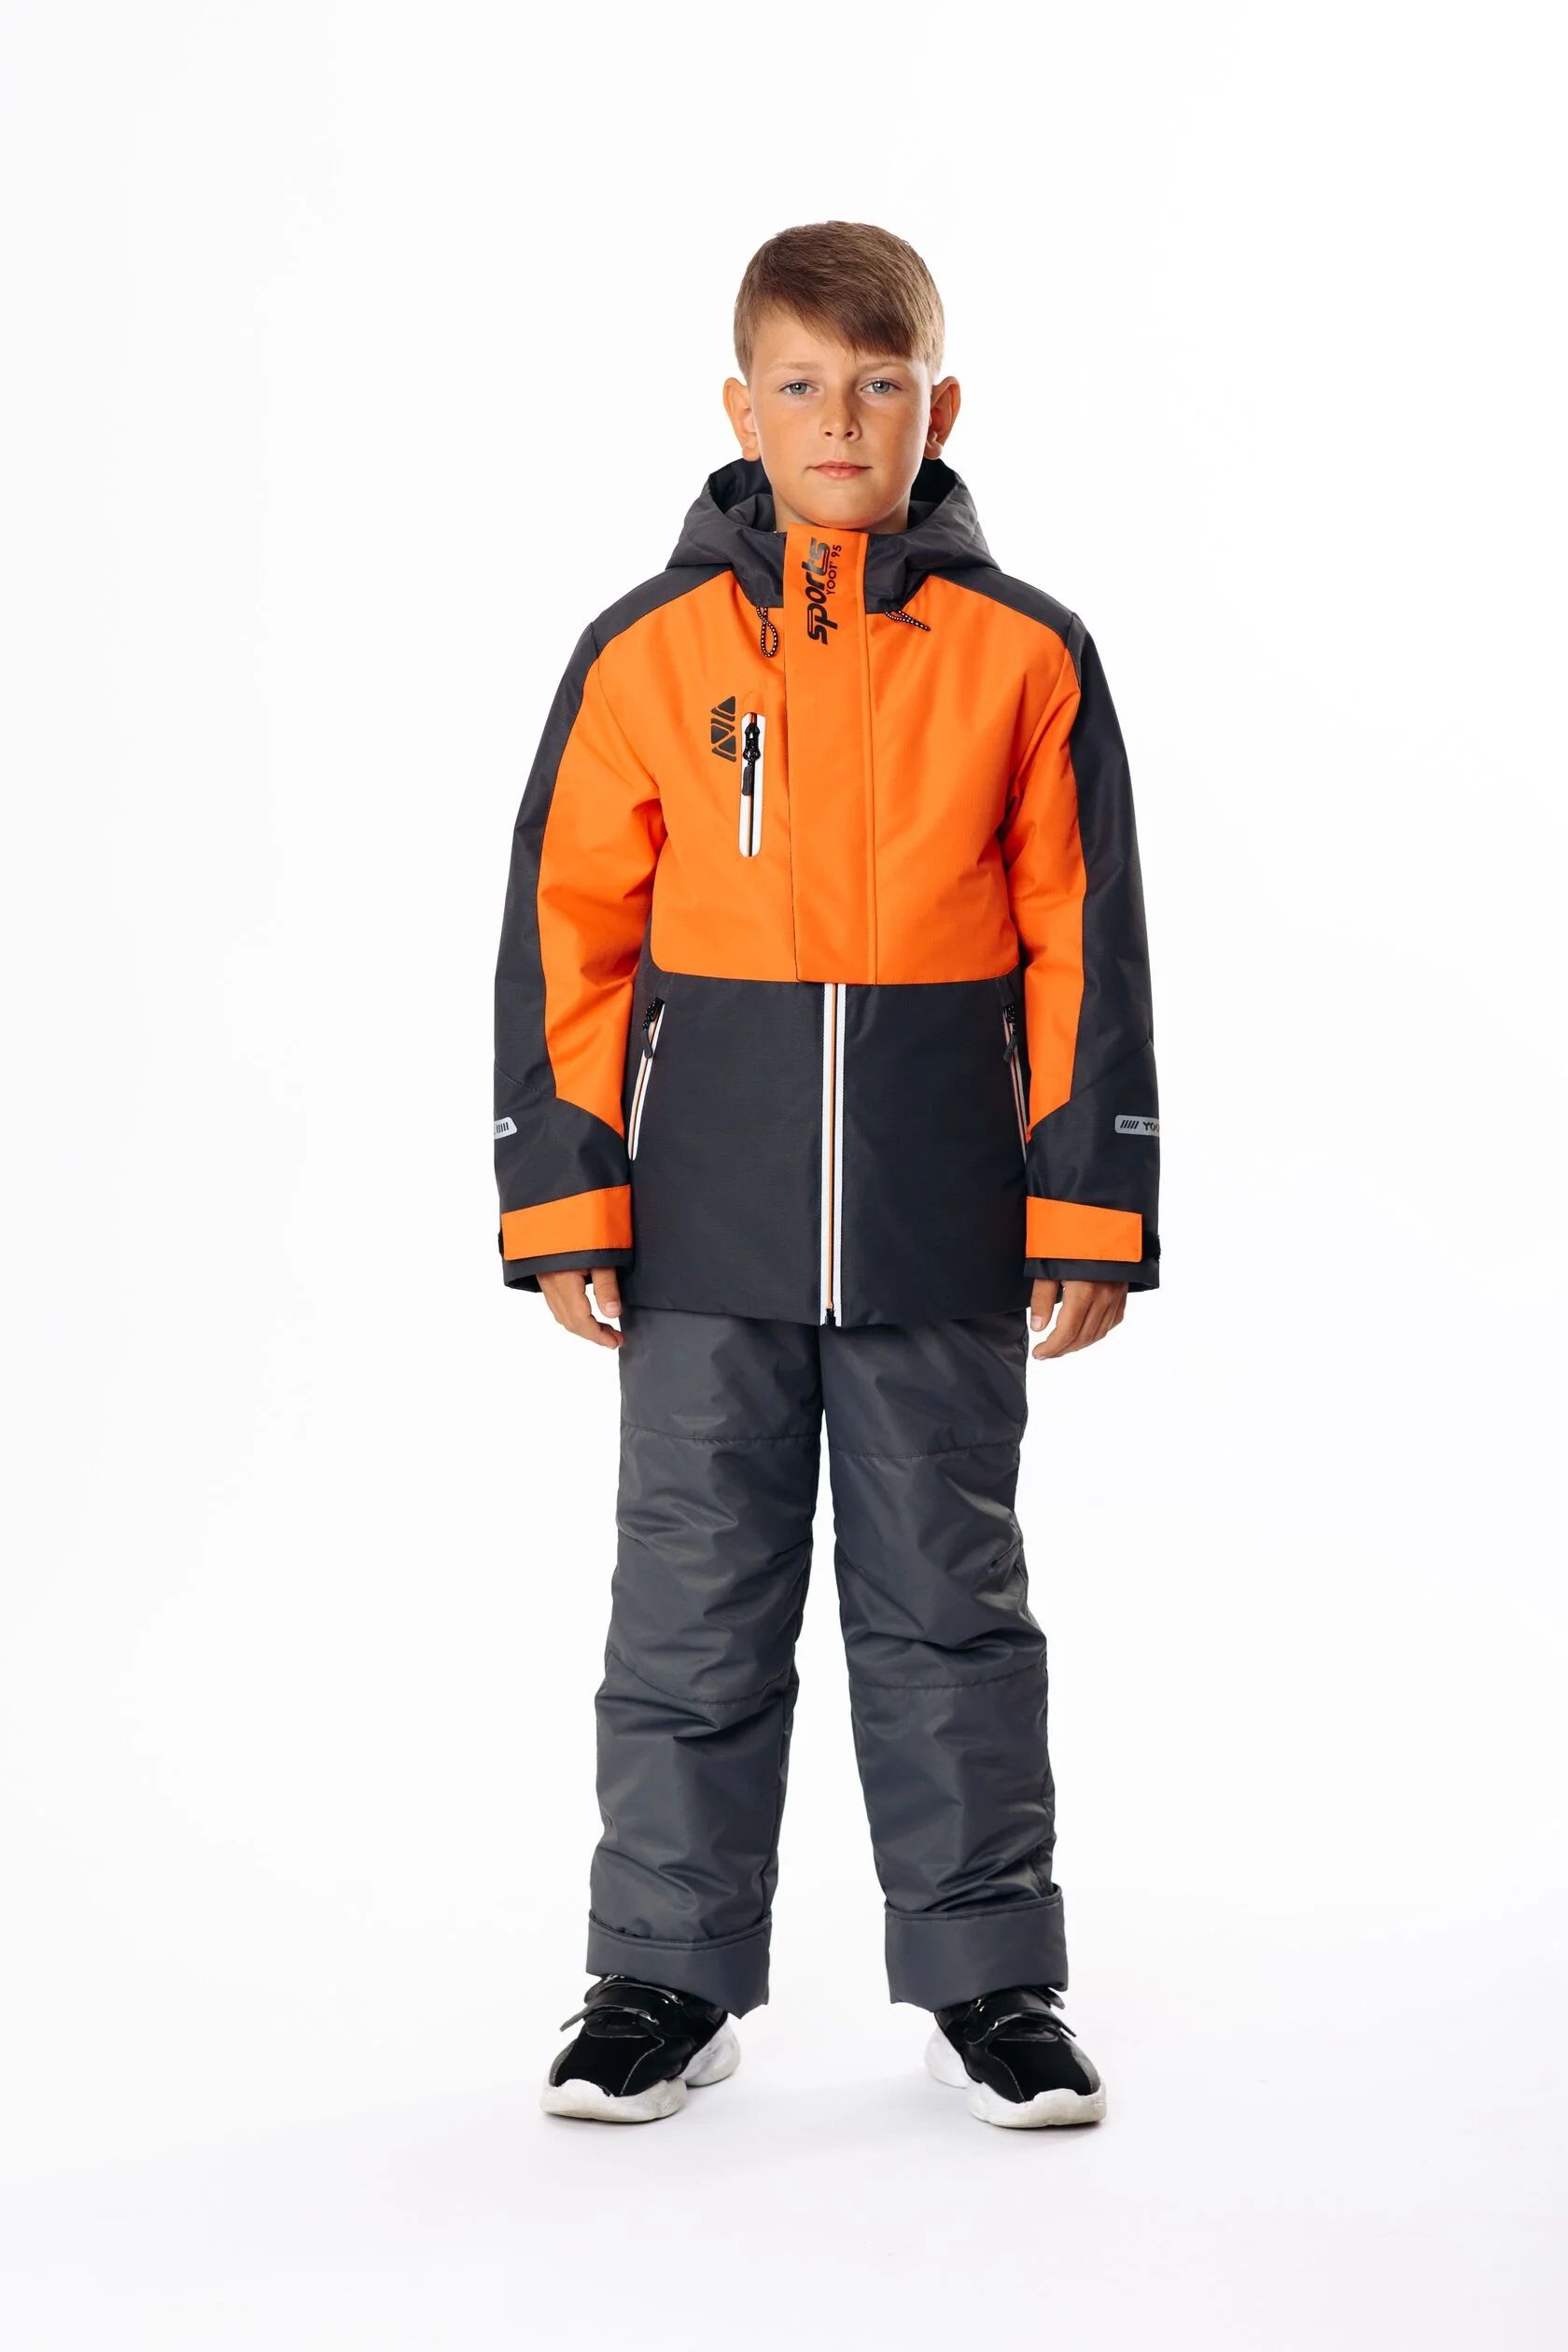 Комплект верхней одежды Yoot 2505 оранжевый, 110